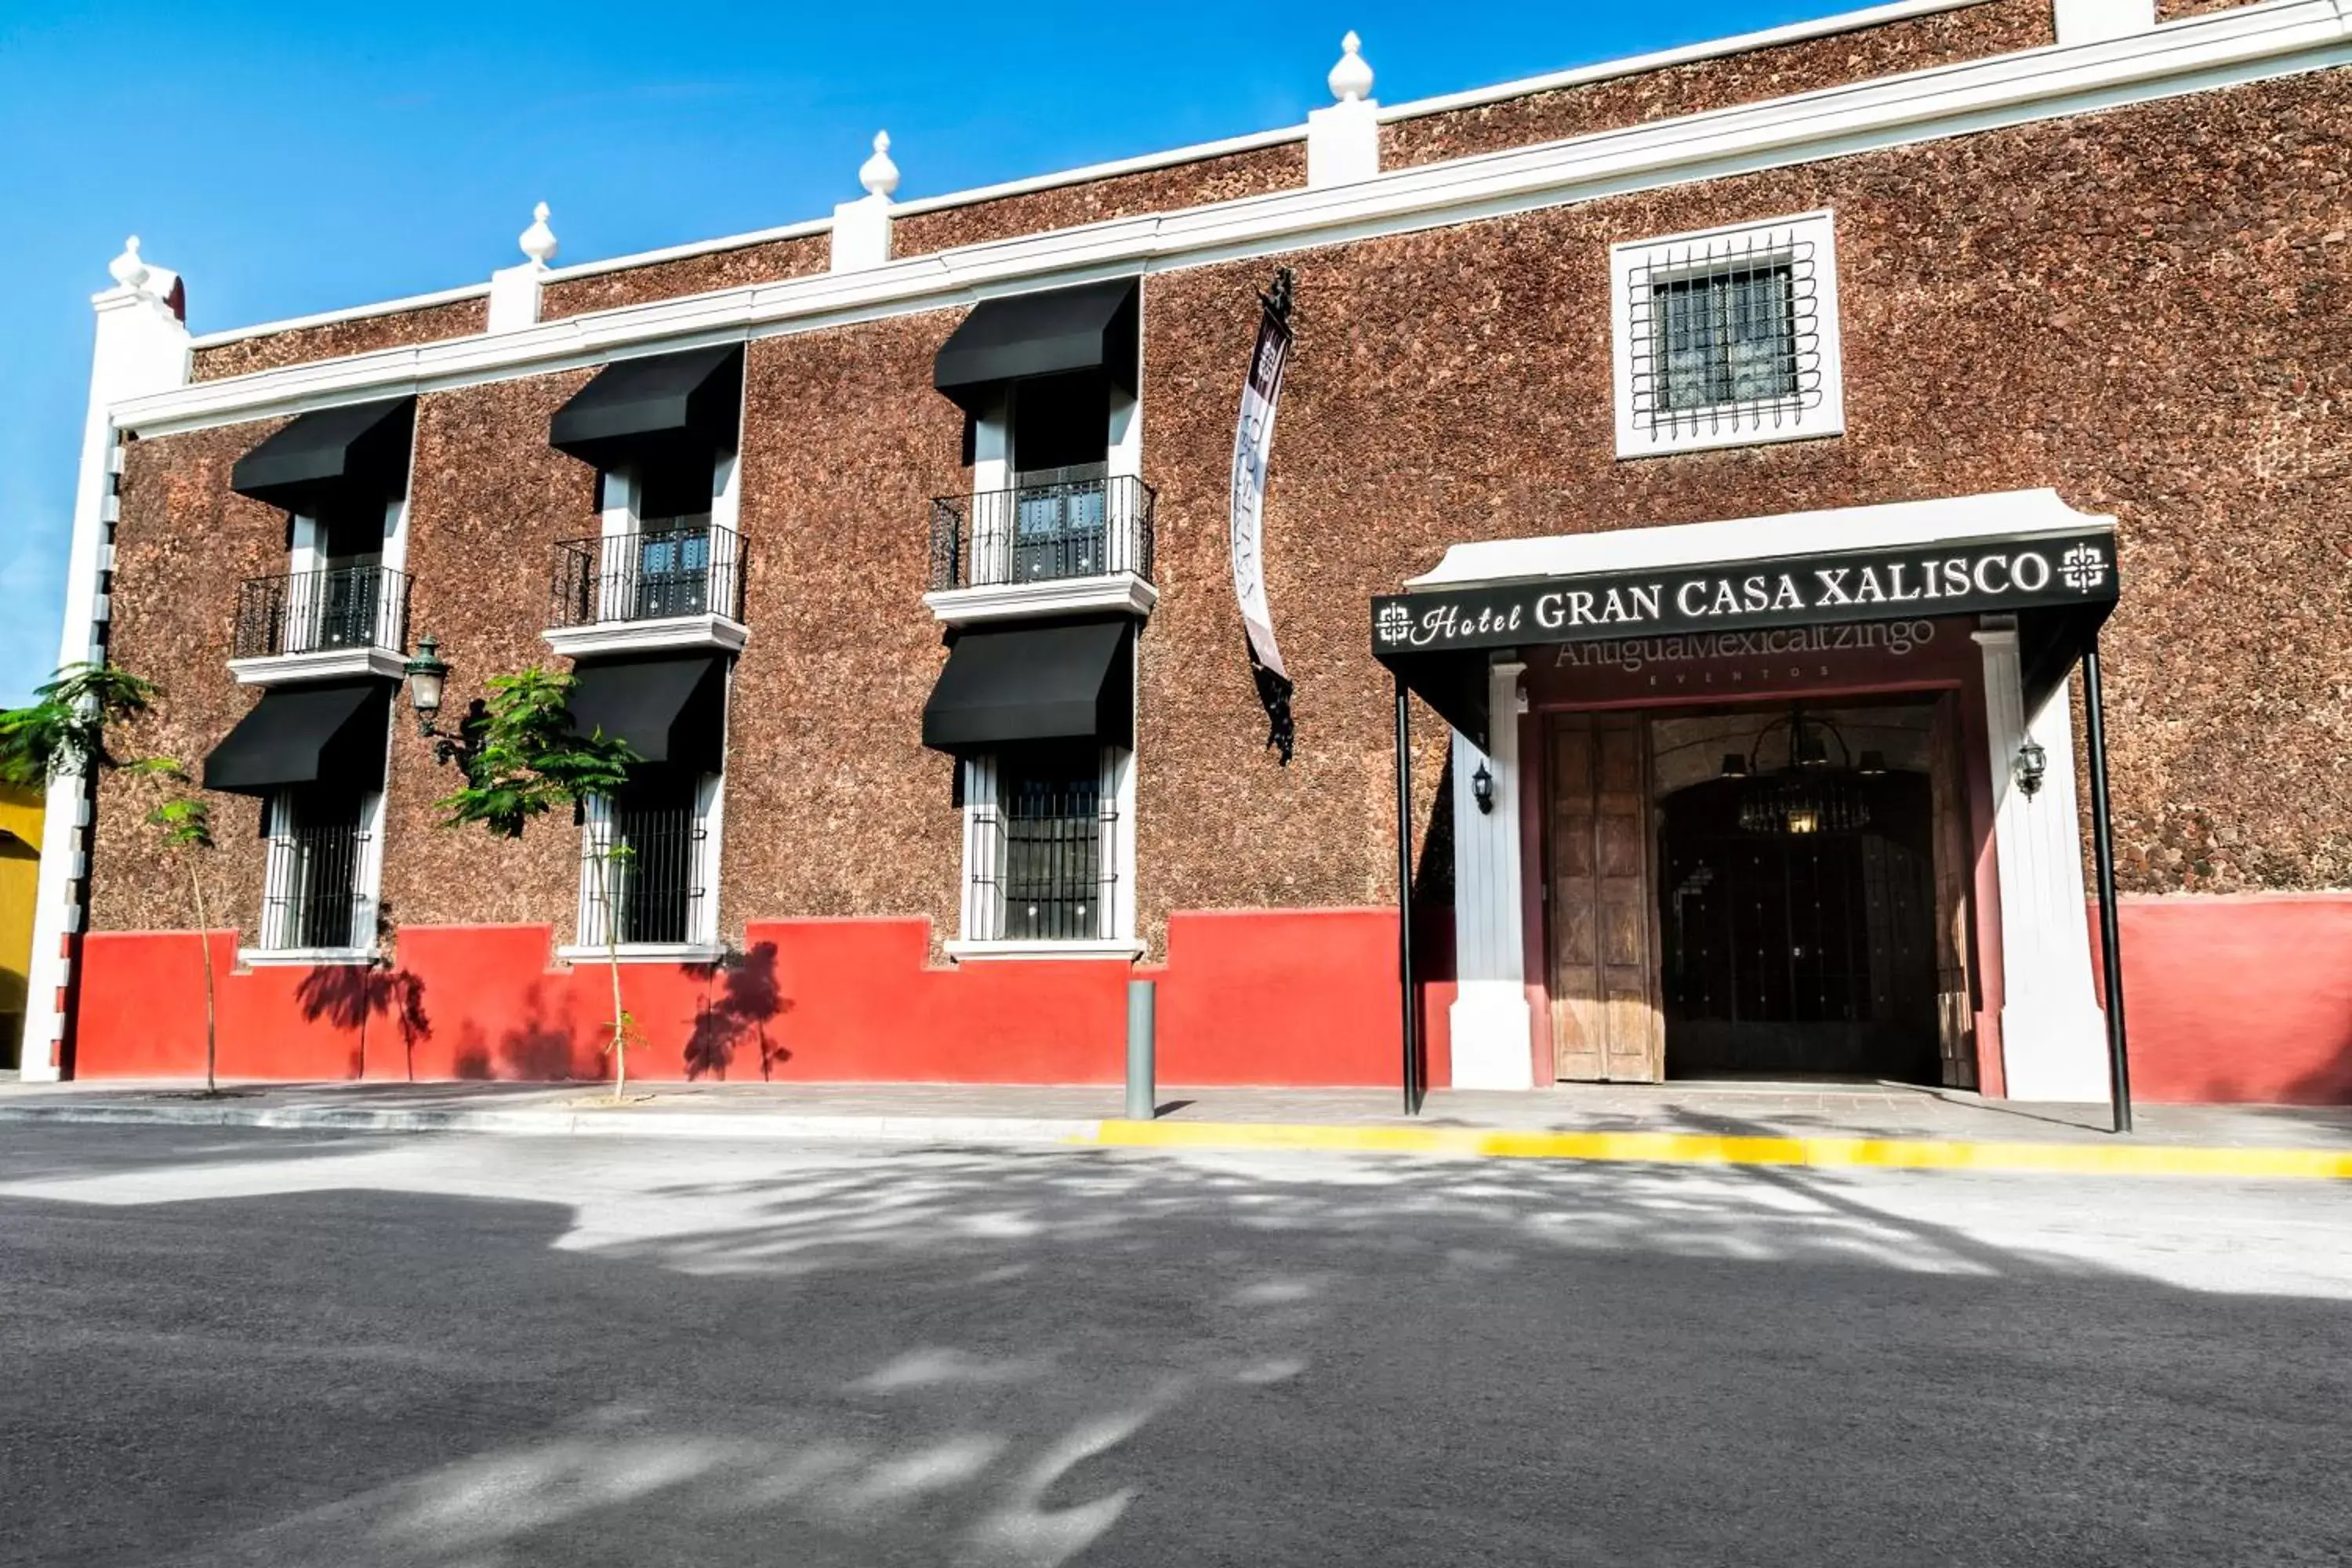 Property Building in Gran Casa Xalisco